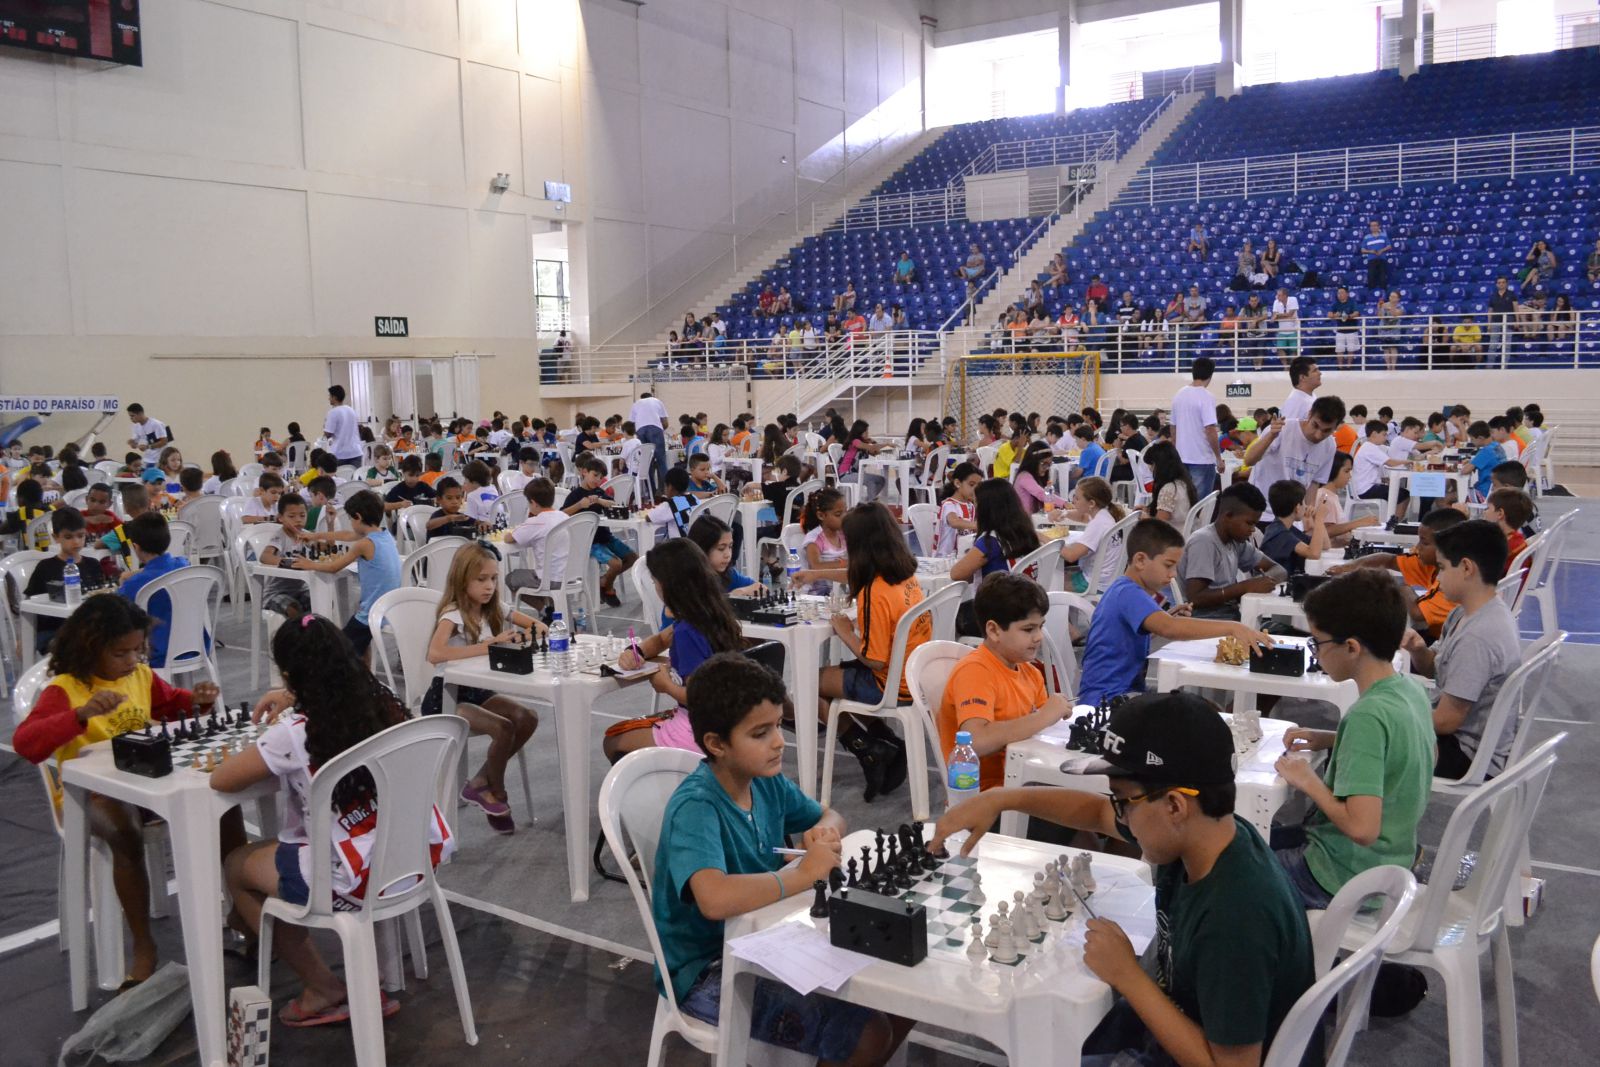 ARENA XADREZ BRASIL - clube de xadrez 